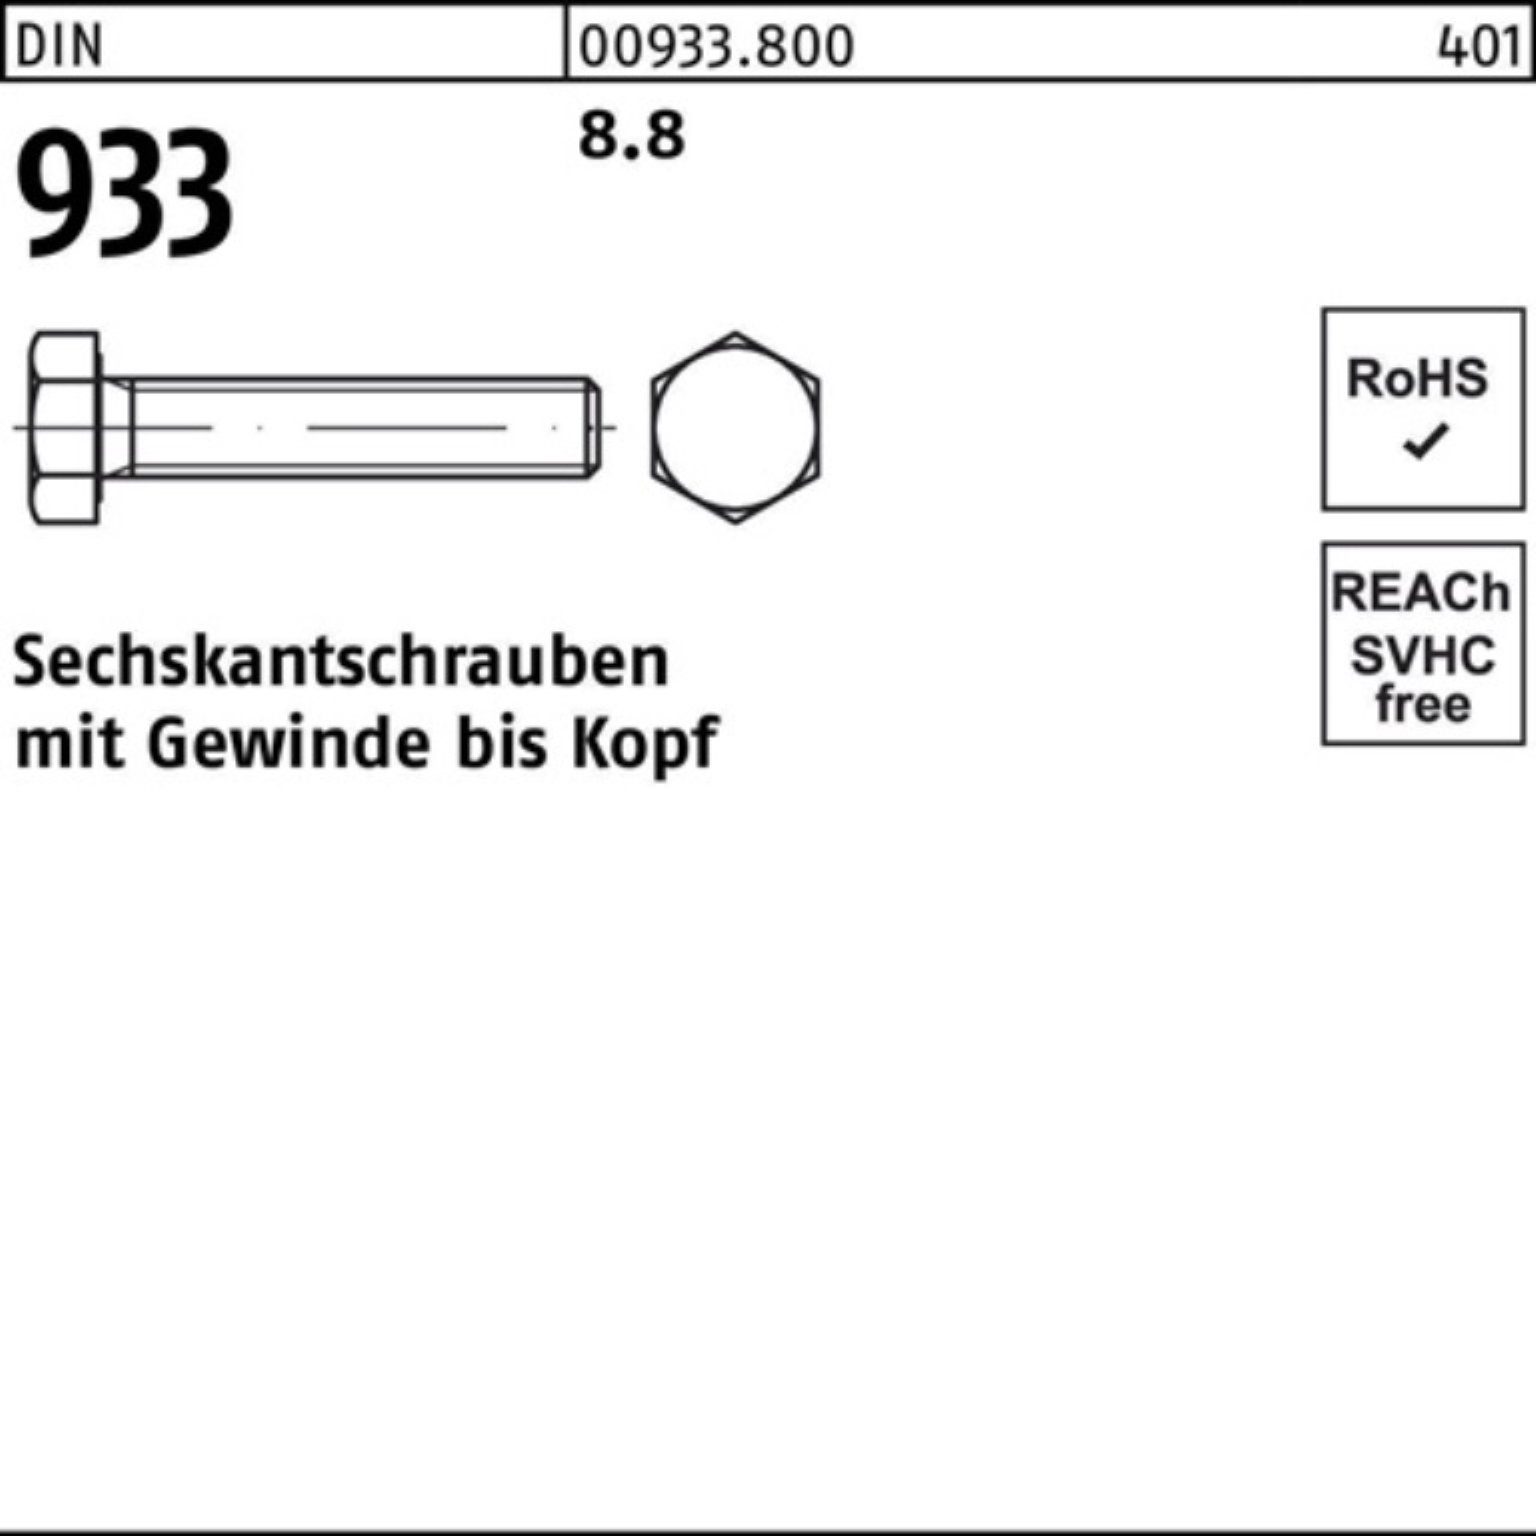 Reyher Sechskantschraube 100er Pack Stück 55 Sechskantschraube 933 8.8 M10x 100 DIN DIN VG 933